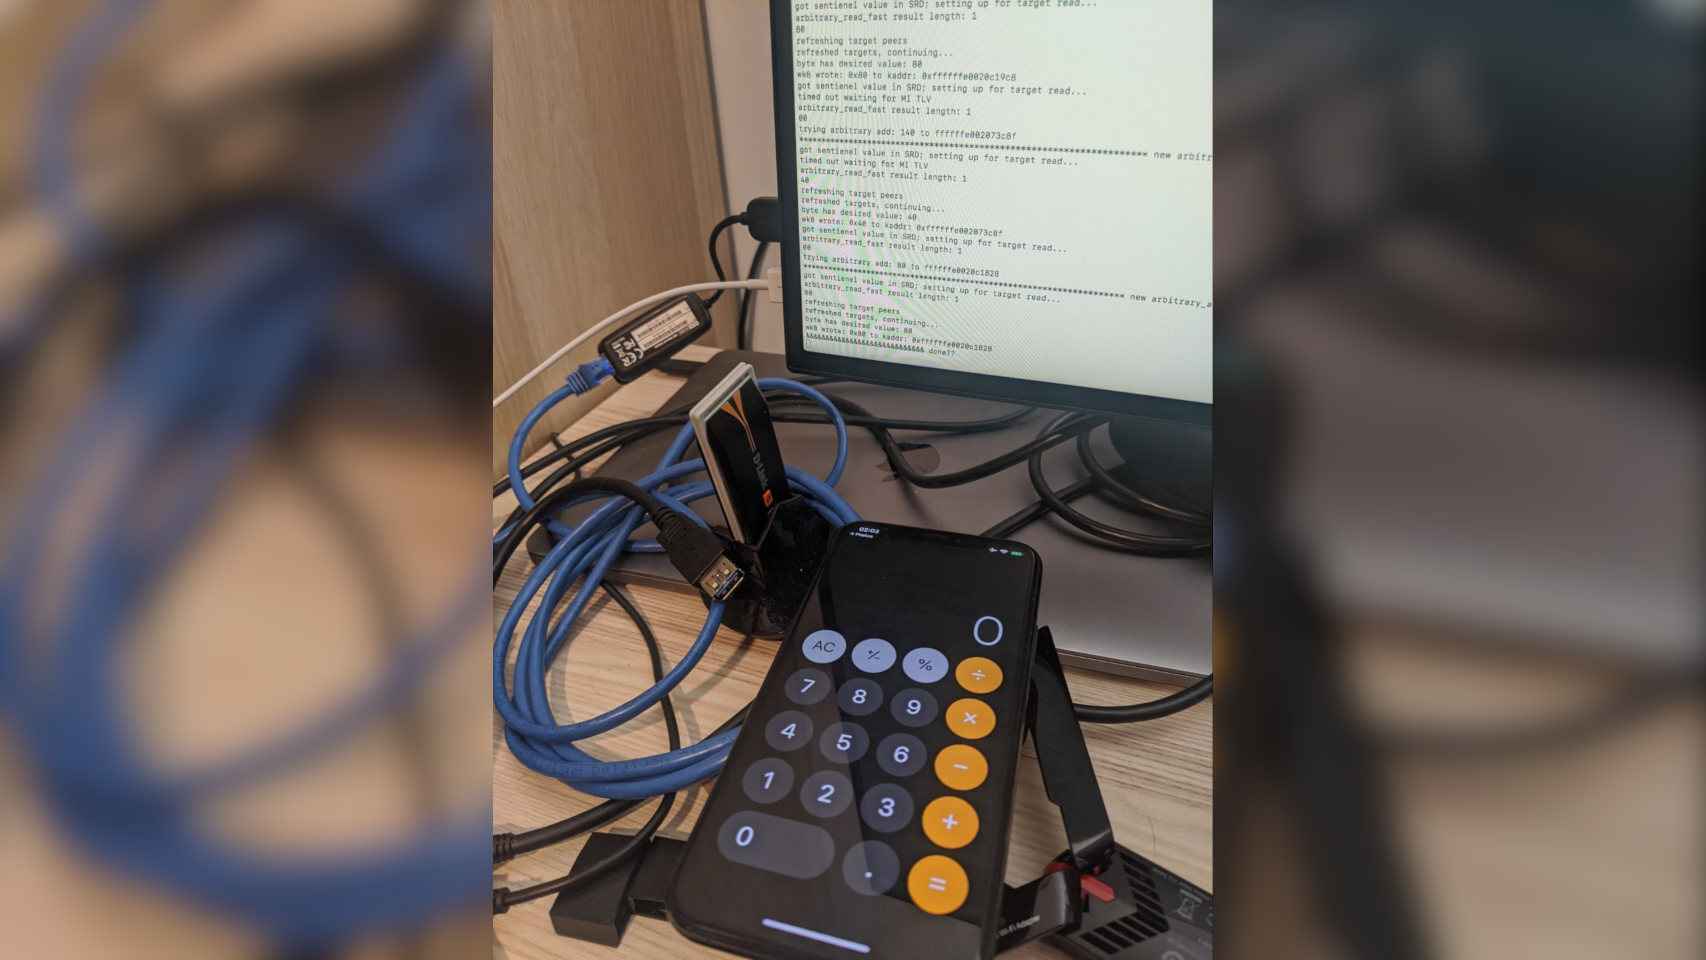 Los resultados de calculadora de un iPhone hackeado aparecen en un ordenador